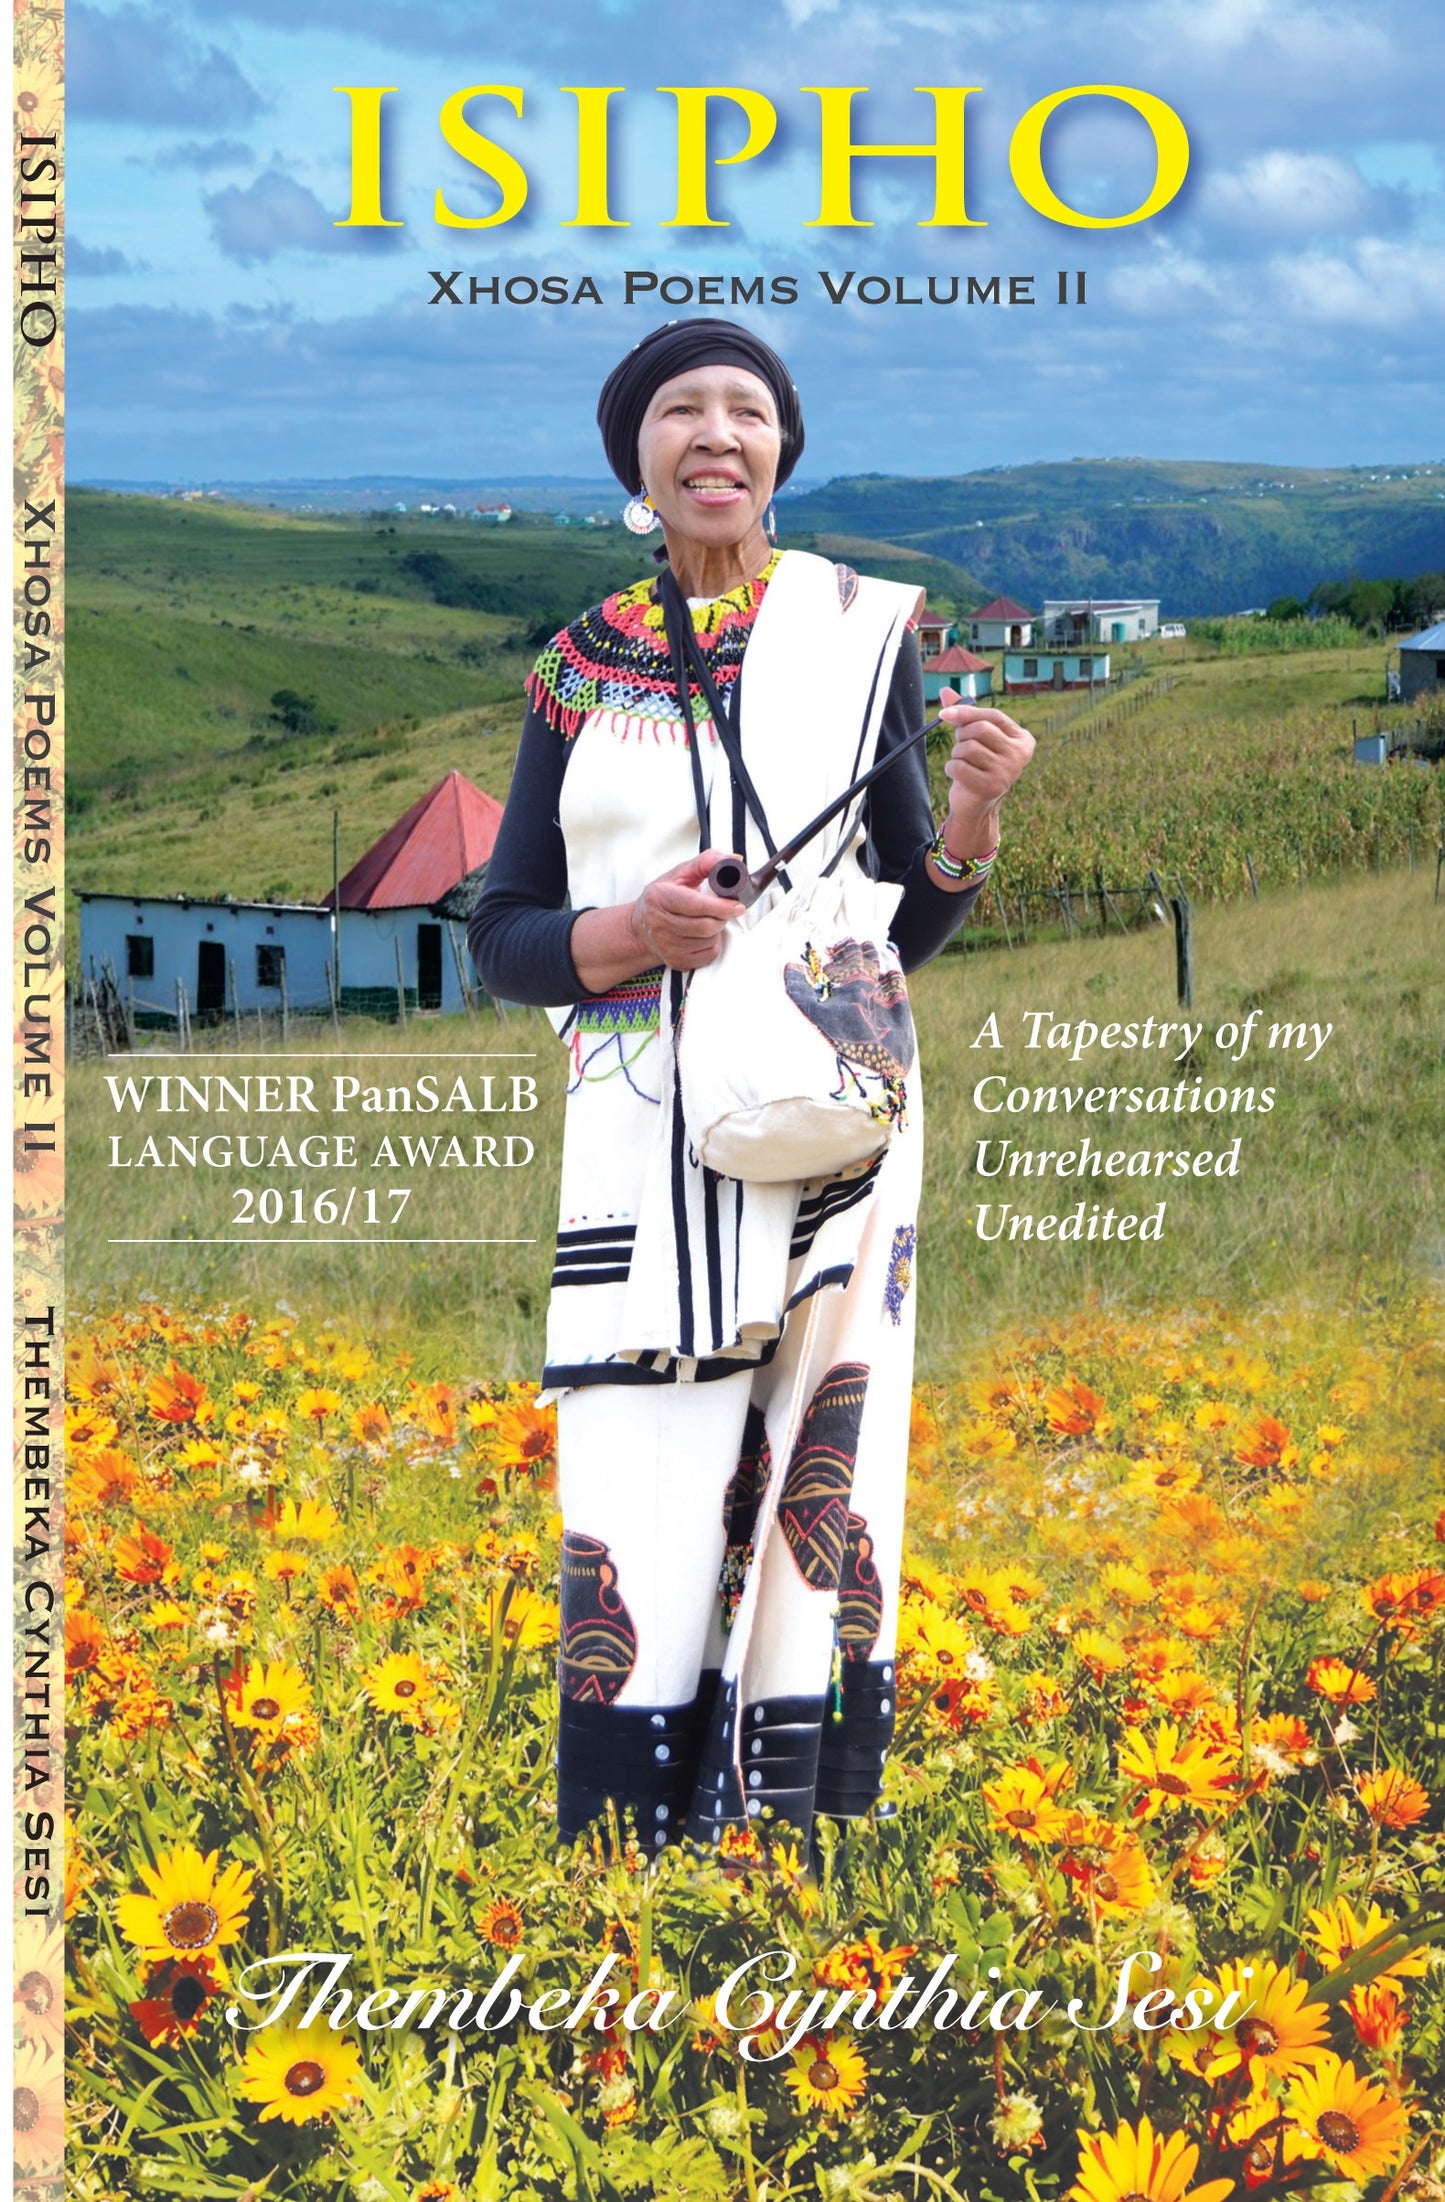 Isipho Xhosa Poems Volume 2, by Cynthia- Thembeka Sesi